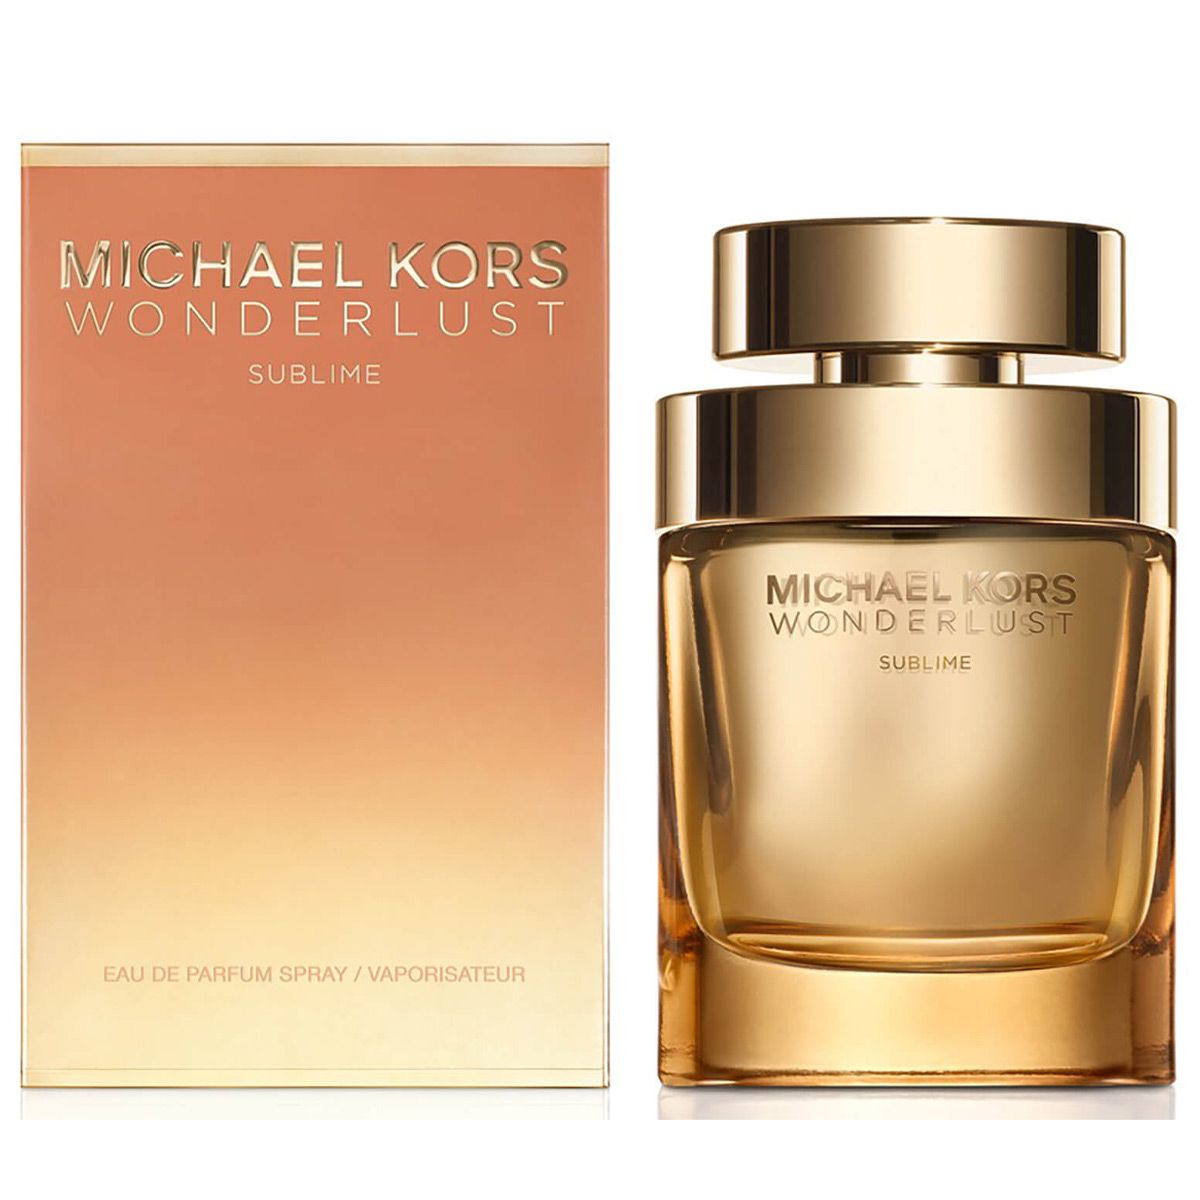  Michael Kors Wonderlust Sublime Eau de Parfum for Woman 